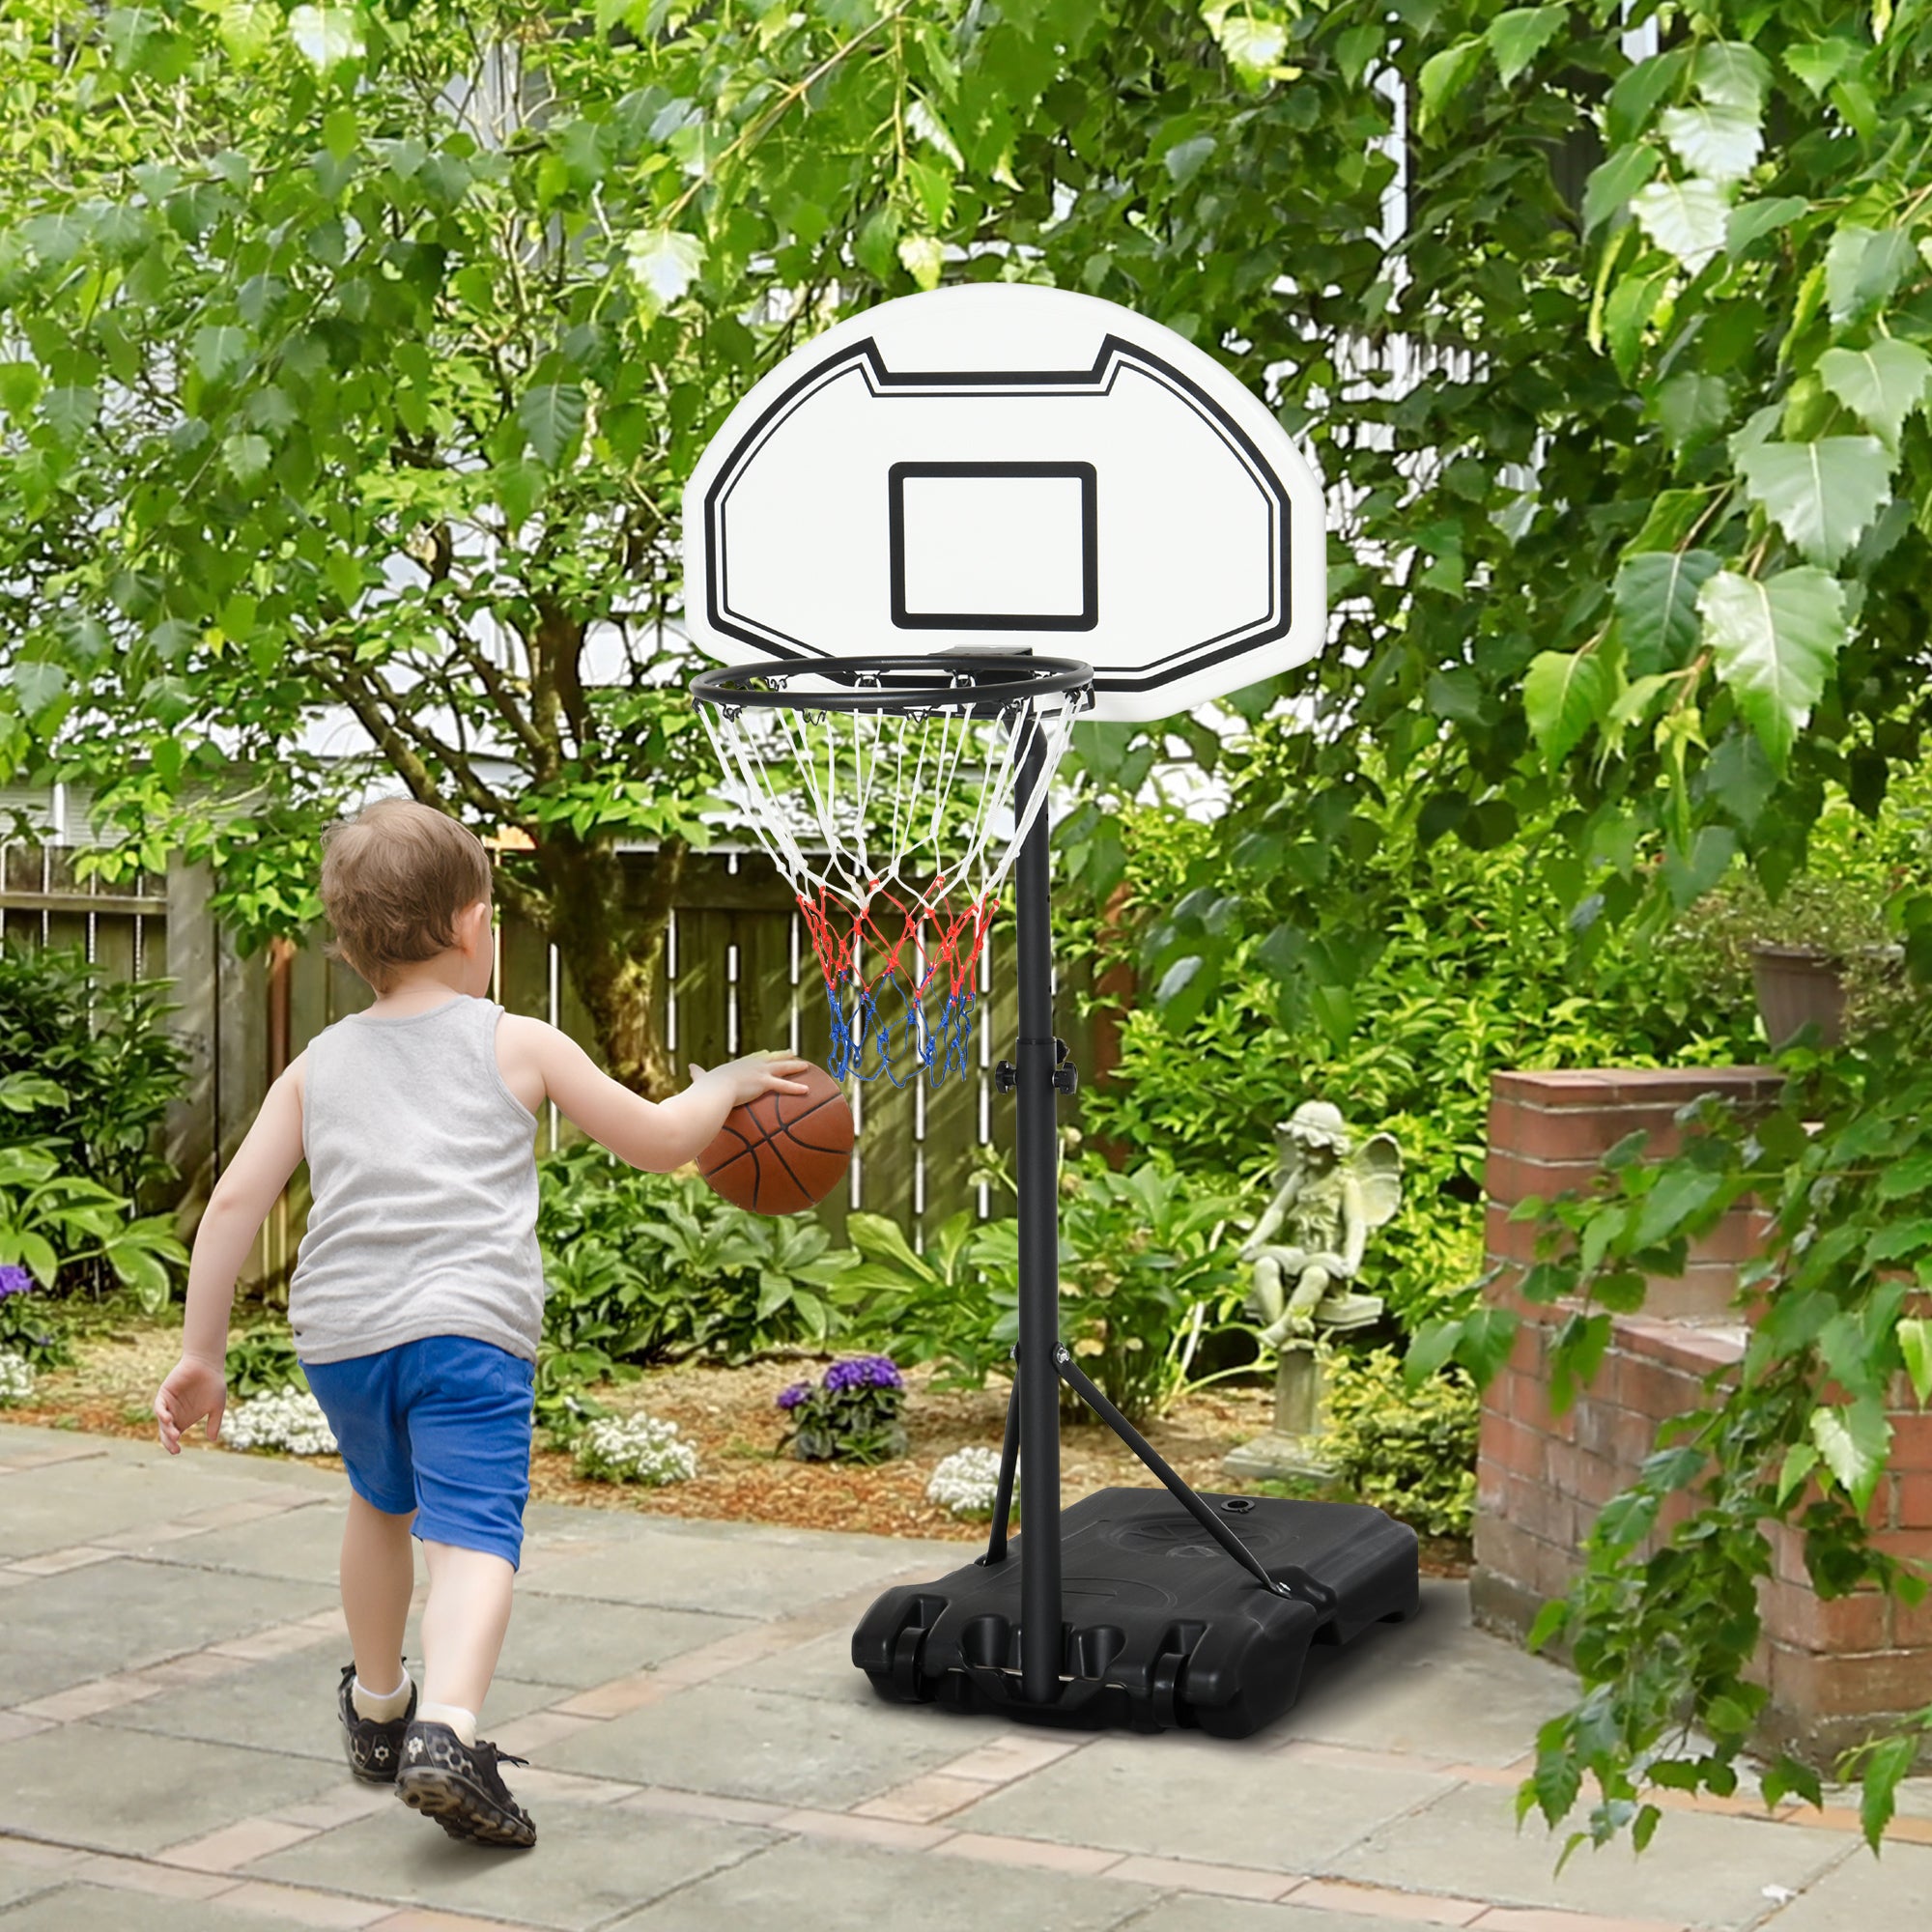 EASYCOMFORT Canestro Basket per Bambini ad Altezza Regolabile 132.5 - 161.5  cm con Base Riempibile e Ruote, Multicolore